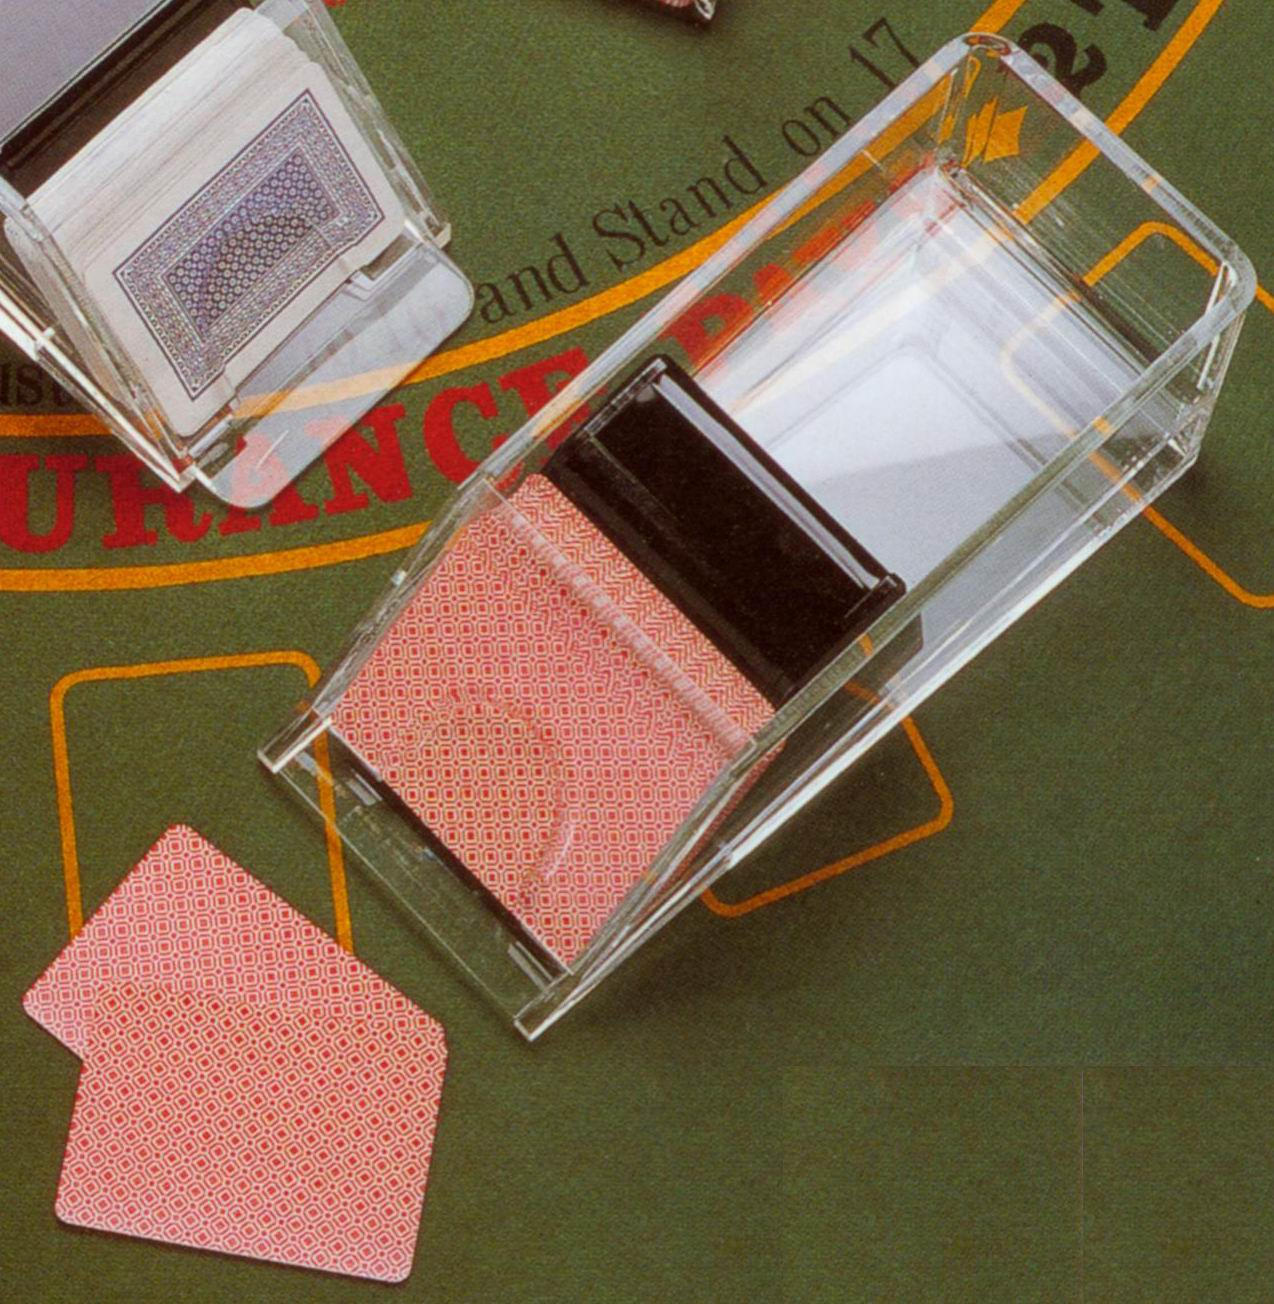 acrylic dealer shoe for 4 / 6 decks of playing cards (Чистка акриловой дилера на 4 / 6 колод игральных карт)